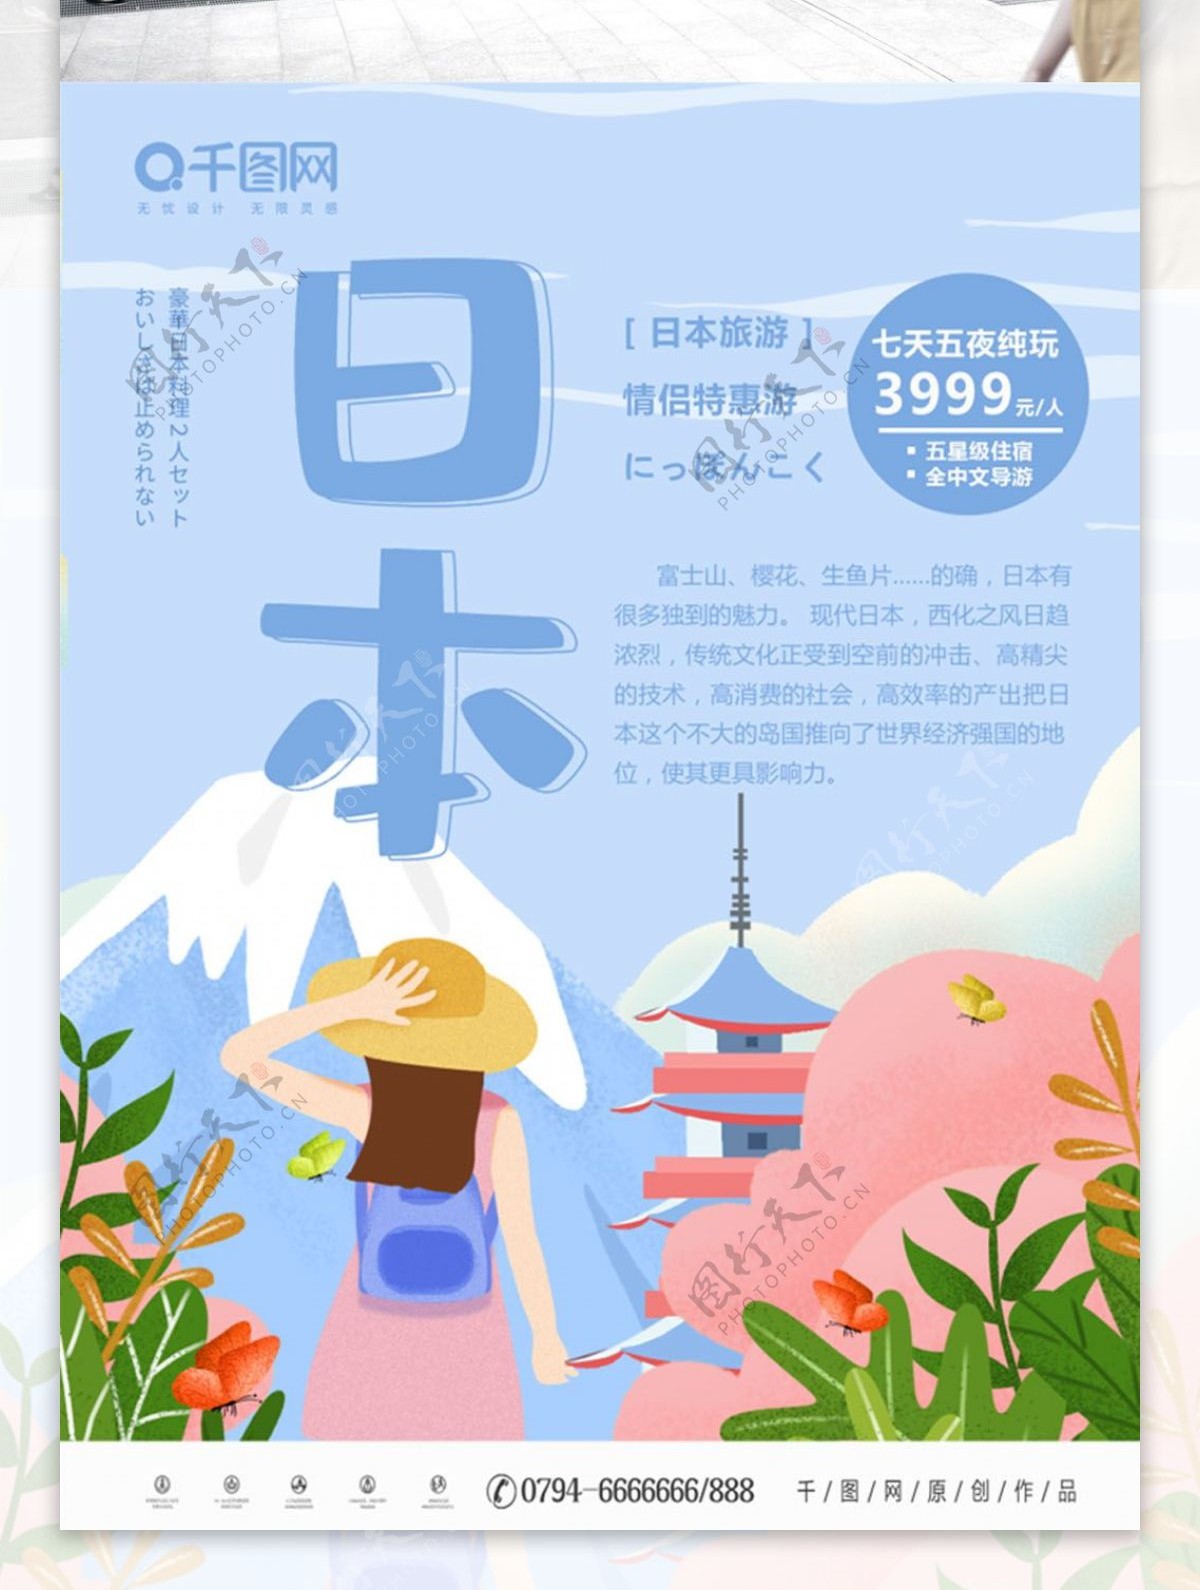 蓝色清新原创手绘风格日本旅游海报